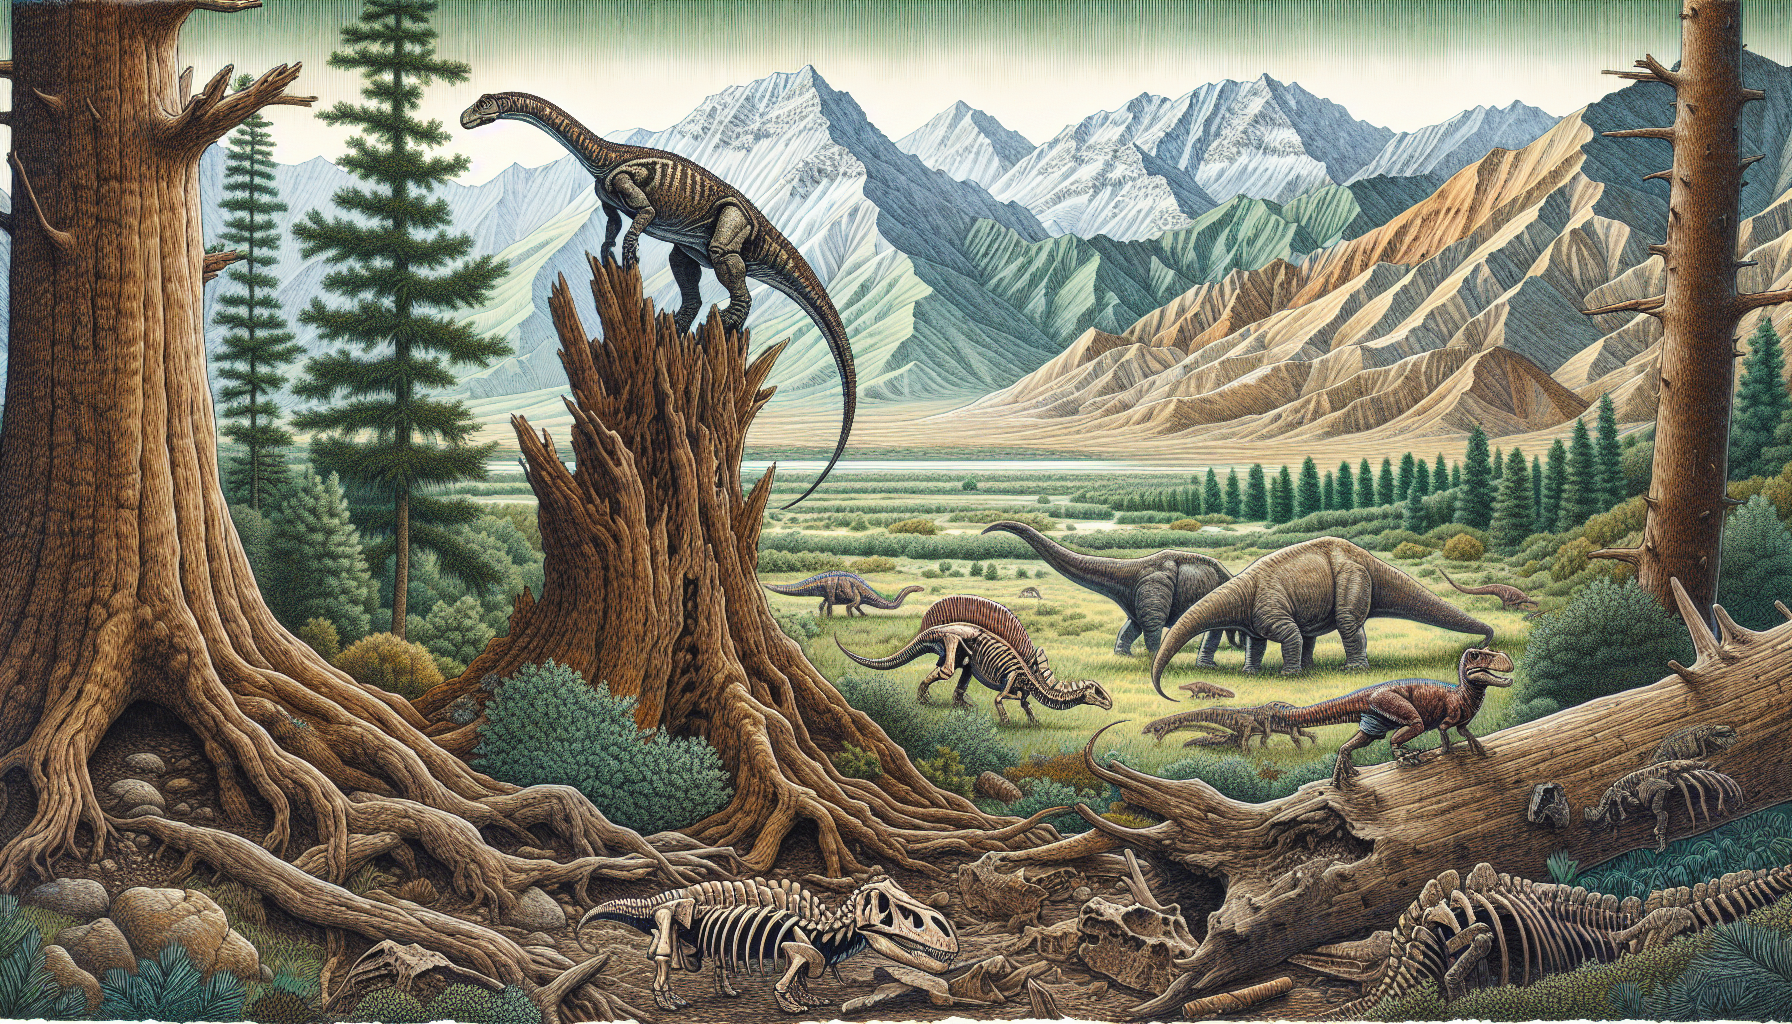 Zeichnung von Dinosauriern in der mongolischen Landschaft